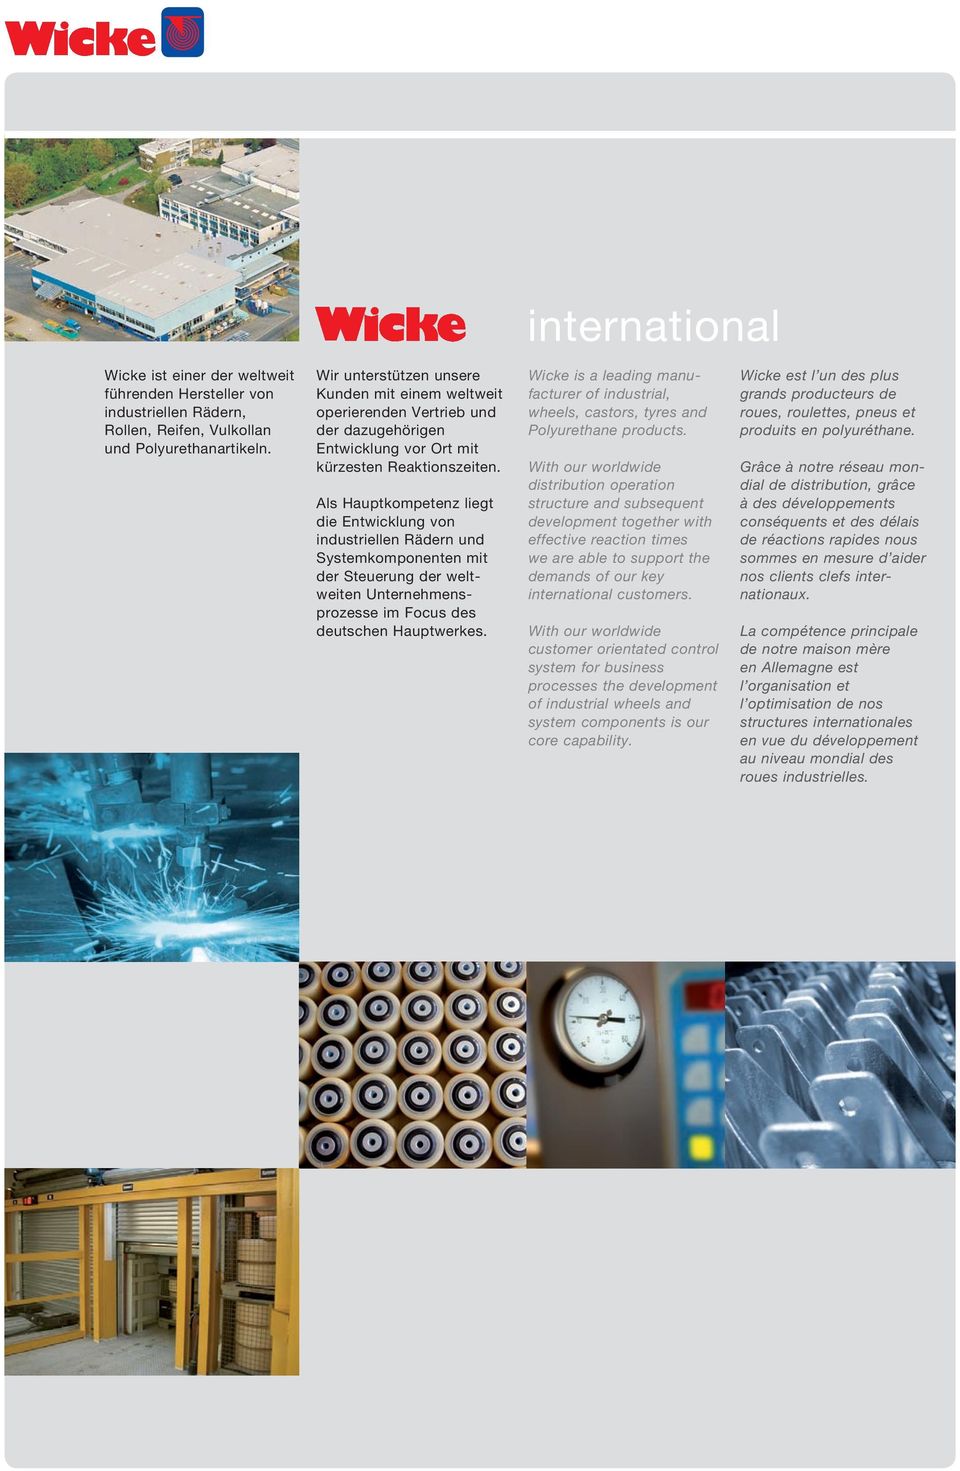 Als Hauptkompetenz liegt die Entwicklung von industriellen Rädern und Systemkomponenten mit der Steuerung der weltweiten Unternehmensprozesse im Focus des deutschen Hauptwerkes.